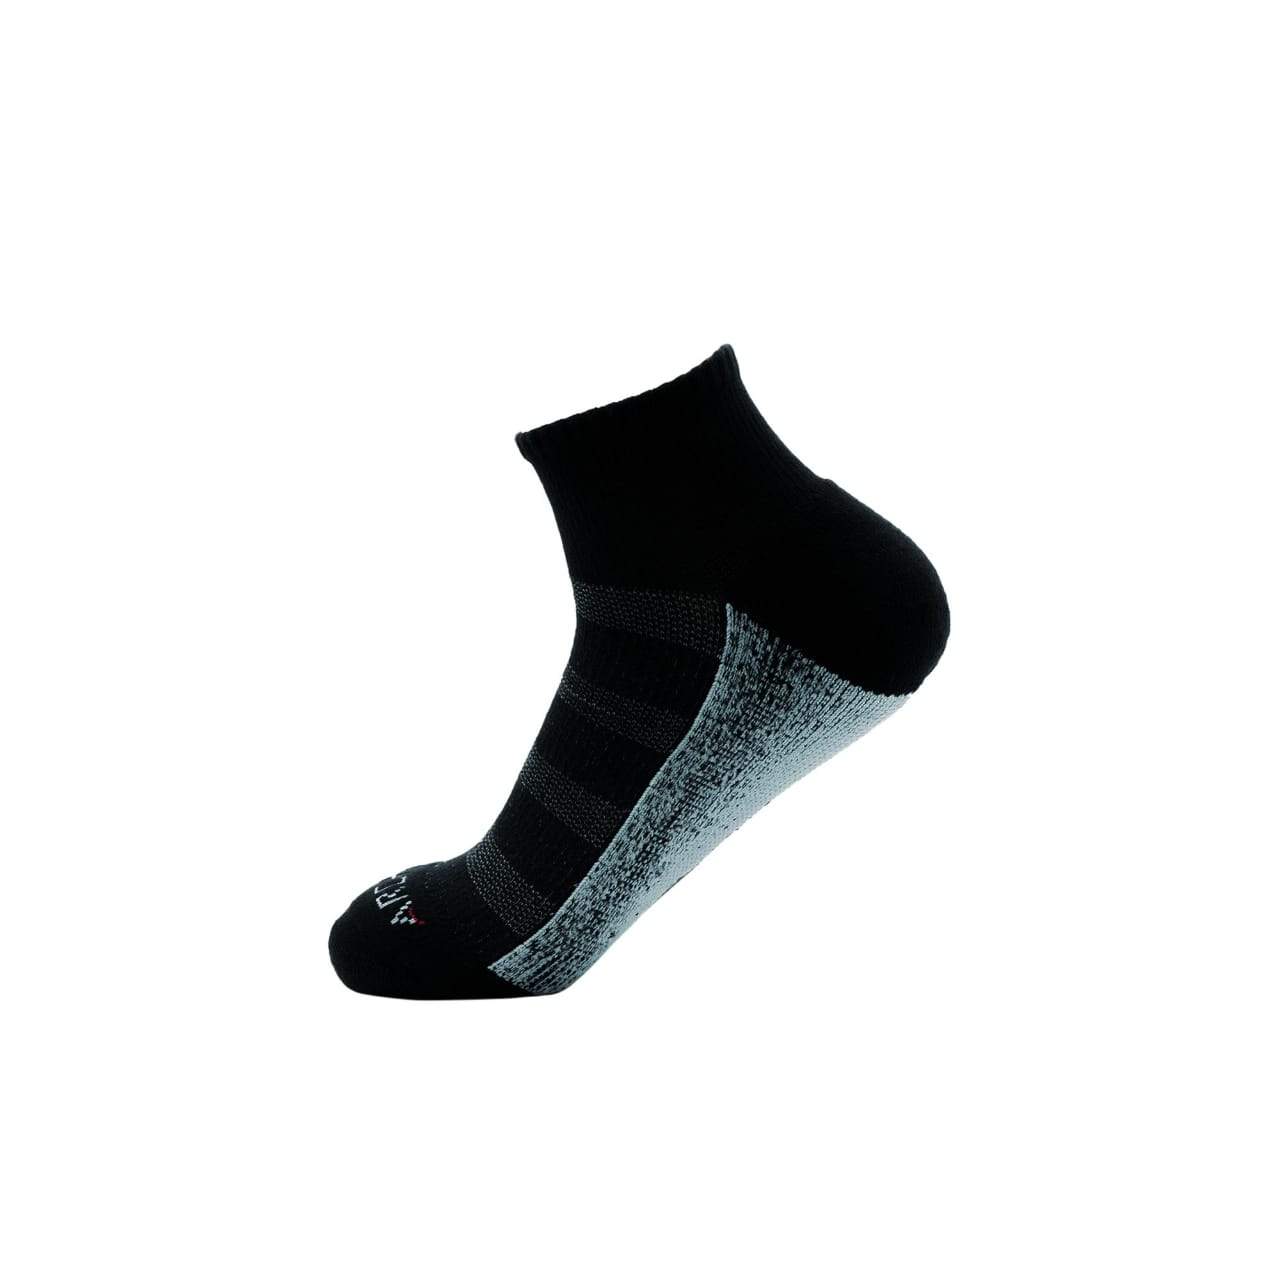 Black White Combo Athletic Quarter Socks athletic socks ArchTek